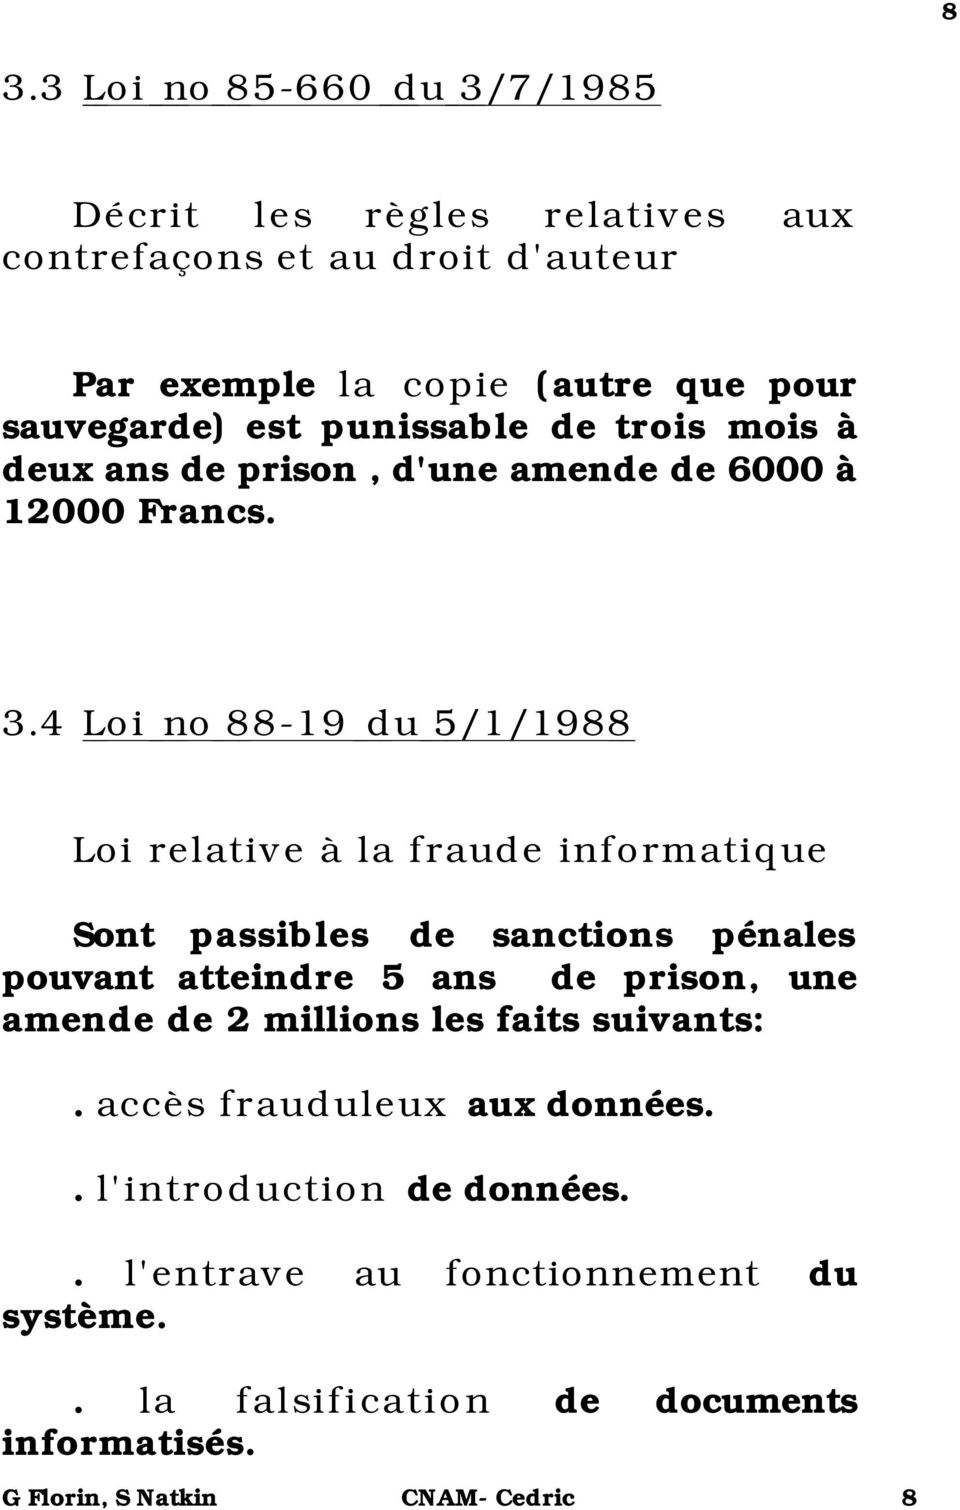 4 Loi no 88-19 du 5/1/1988 Loi relative à la fraude informatique Sont passibles de sanctions pénales pouvant atteindre 5 ans de prison, une amende